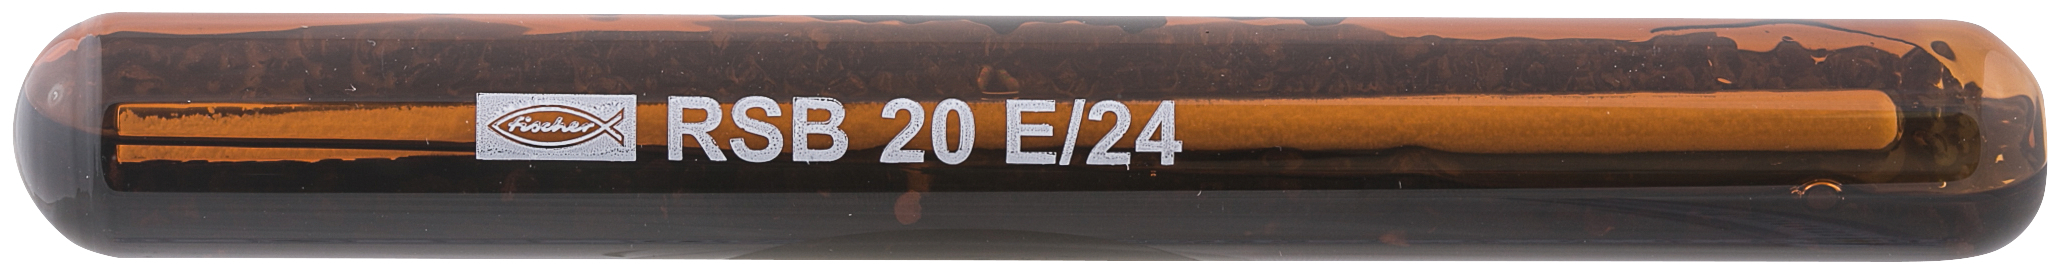 fischer RSB 20 E/24 Ancorante chimico in fiale (1 Pz.) Per fissaggi in calcestruzzo in ambito sismico categoria C1.